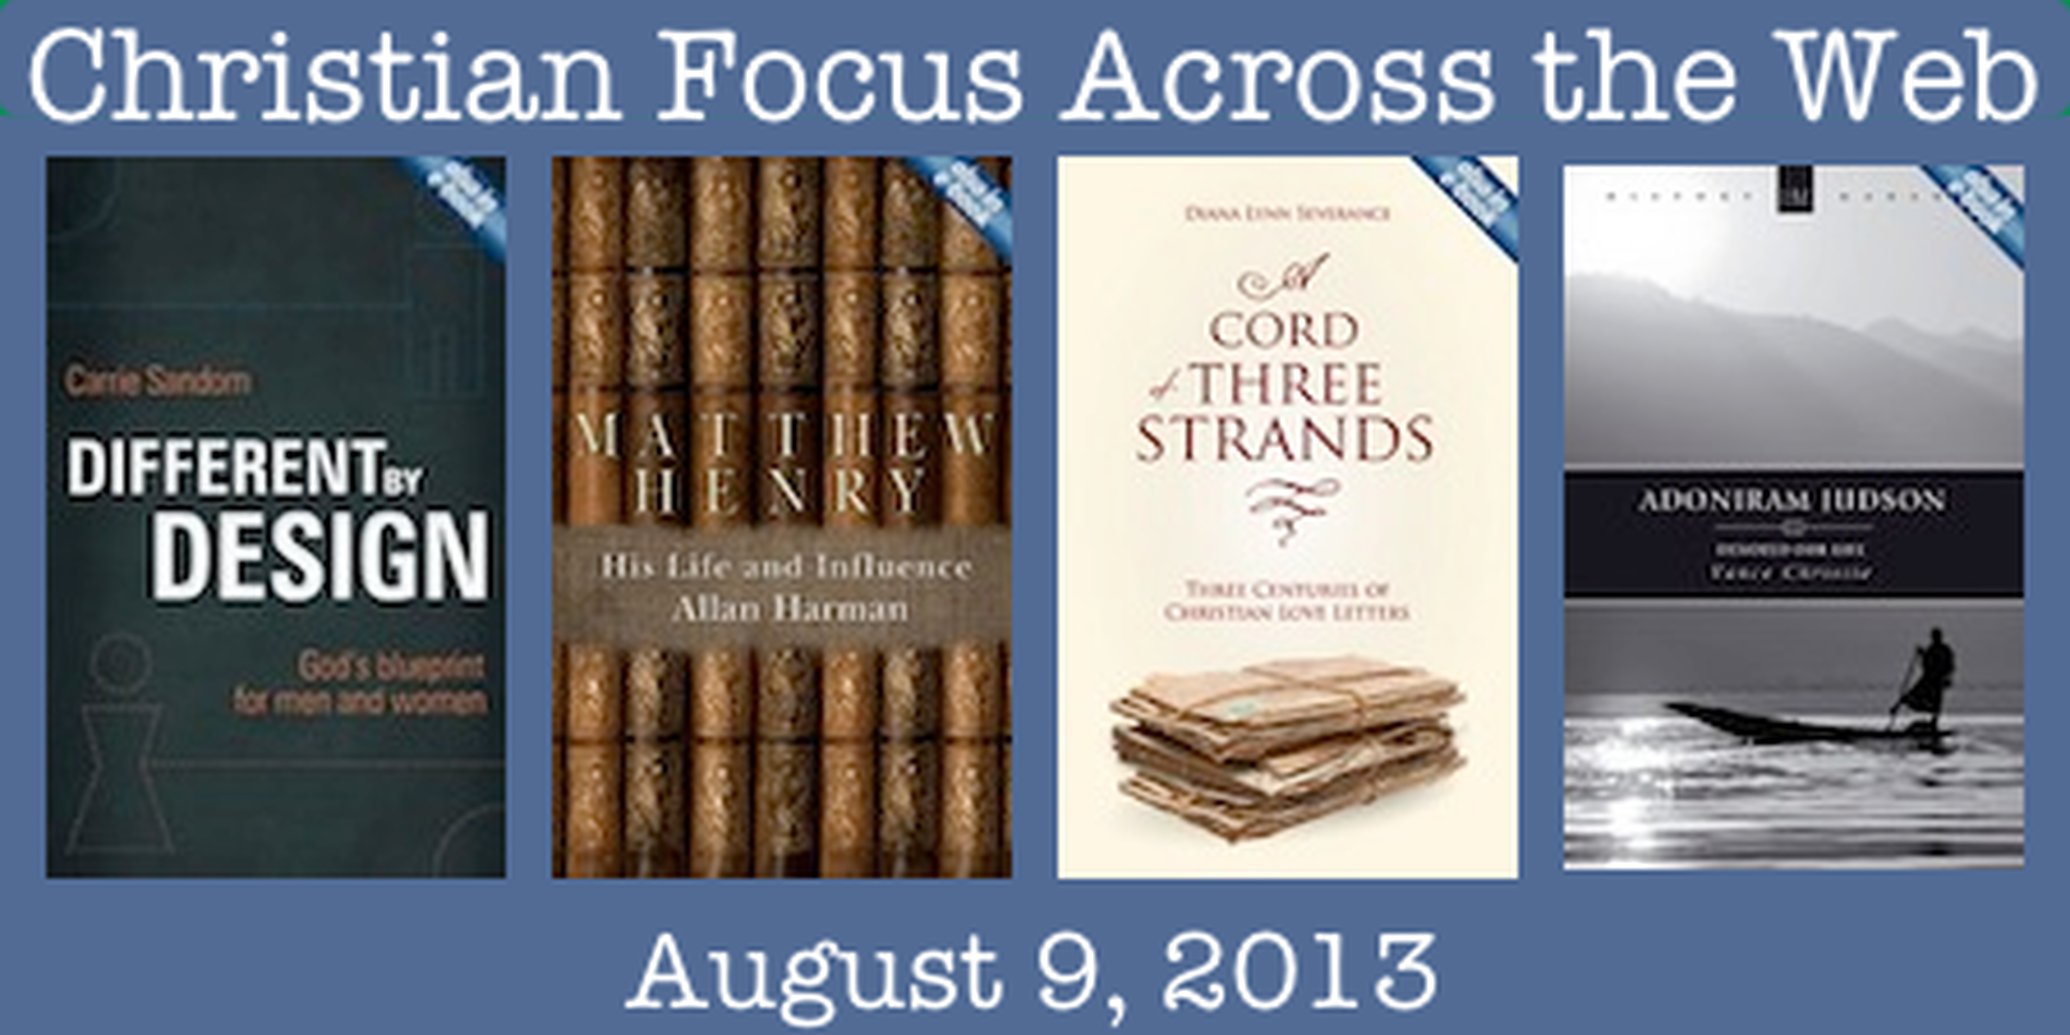 Christian Focus Across the Web - August 9, 2013